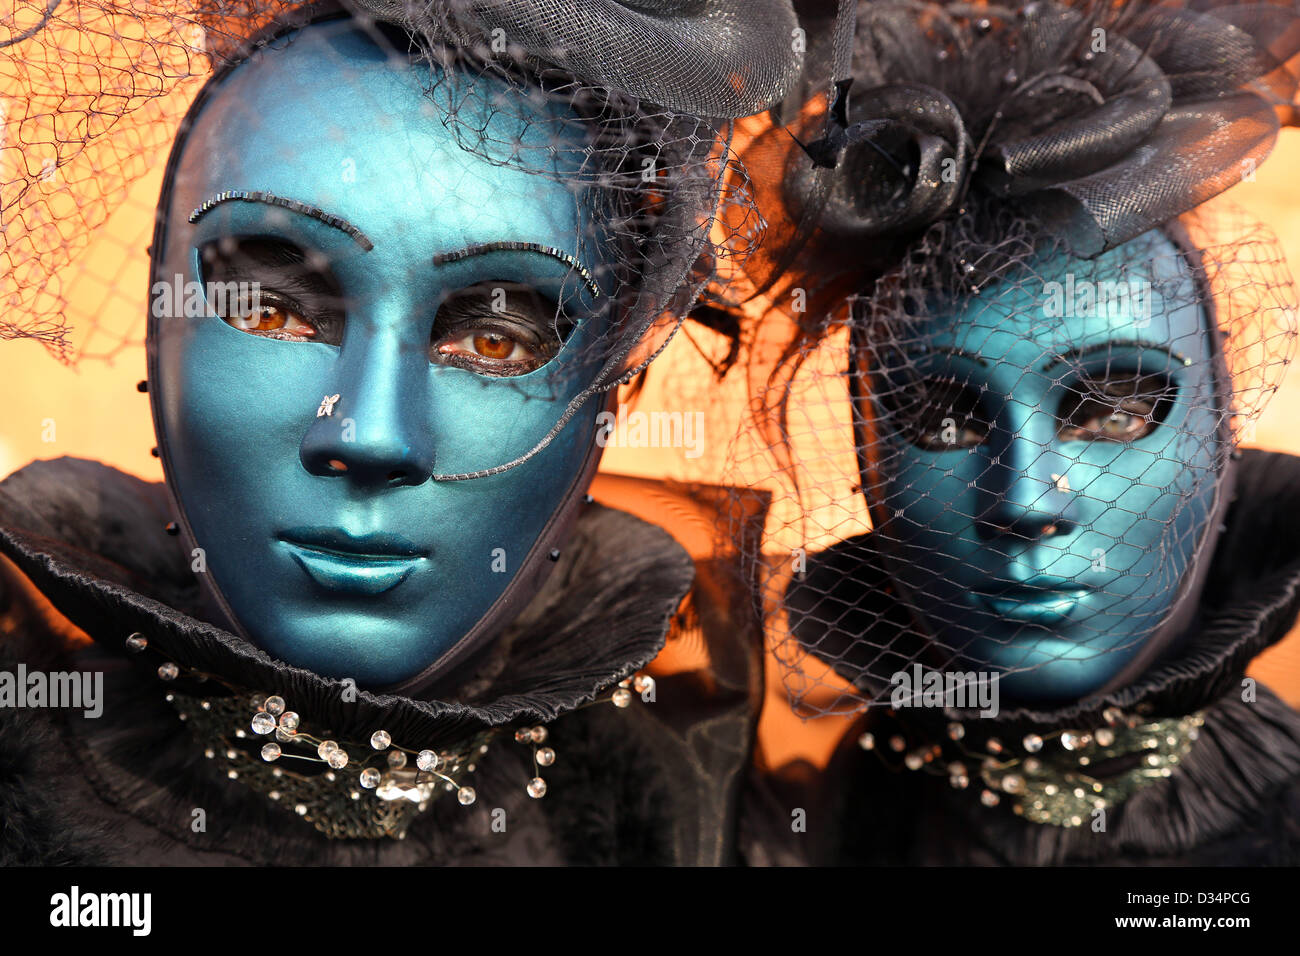 Venecia, Italia. El 9 de febrero de 2013. El fin de semana fue popular en el Carnaval de Venecia 2013 como multitudes de personas acudían a ver los fantásticos trajes y máscaras en Venecia, Italia. Crédito: Paul Brown / Alamy Live News Foto de stock